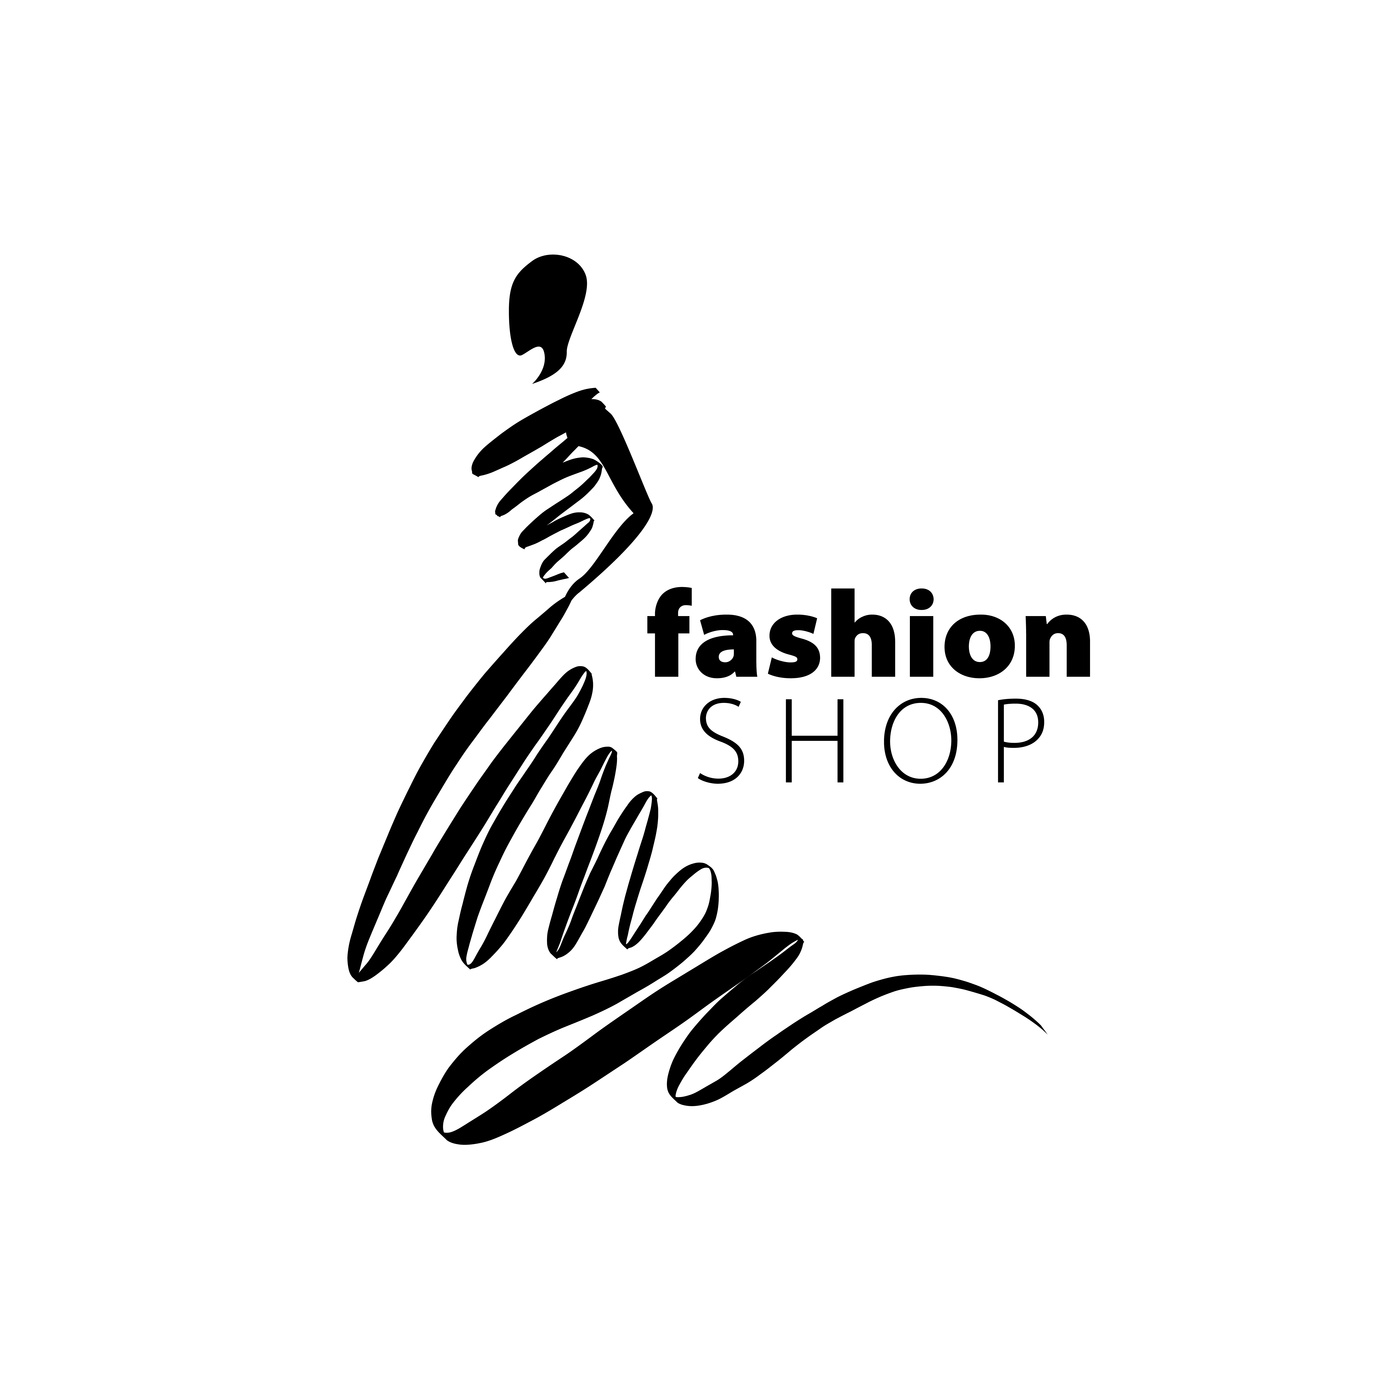 clothes logo ideas 2